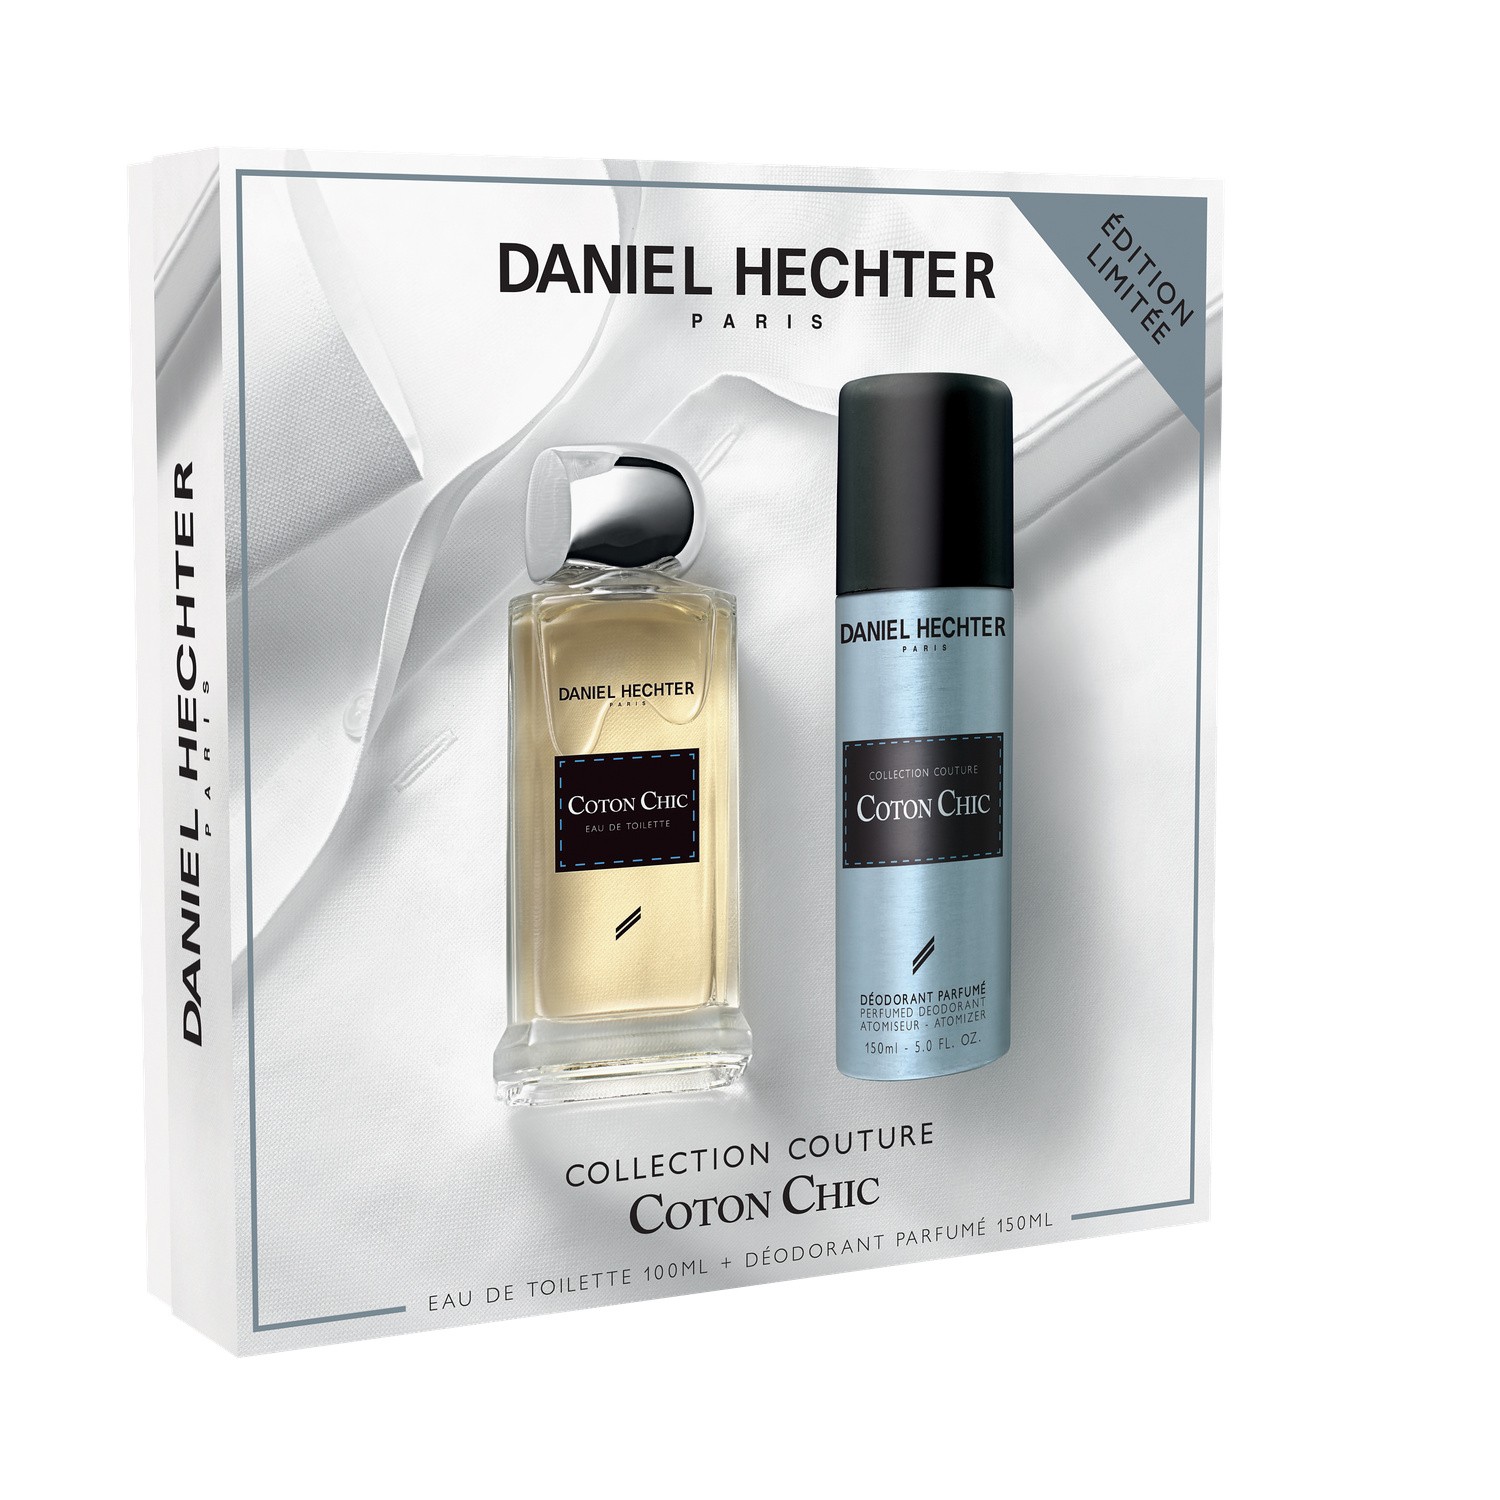  Eau de toilette et déodorant parfumé ecrin collection couture coton chic DANIEL HECHTER DANIEL HECHTER  3058325923303